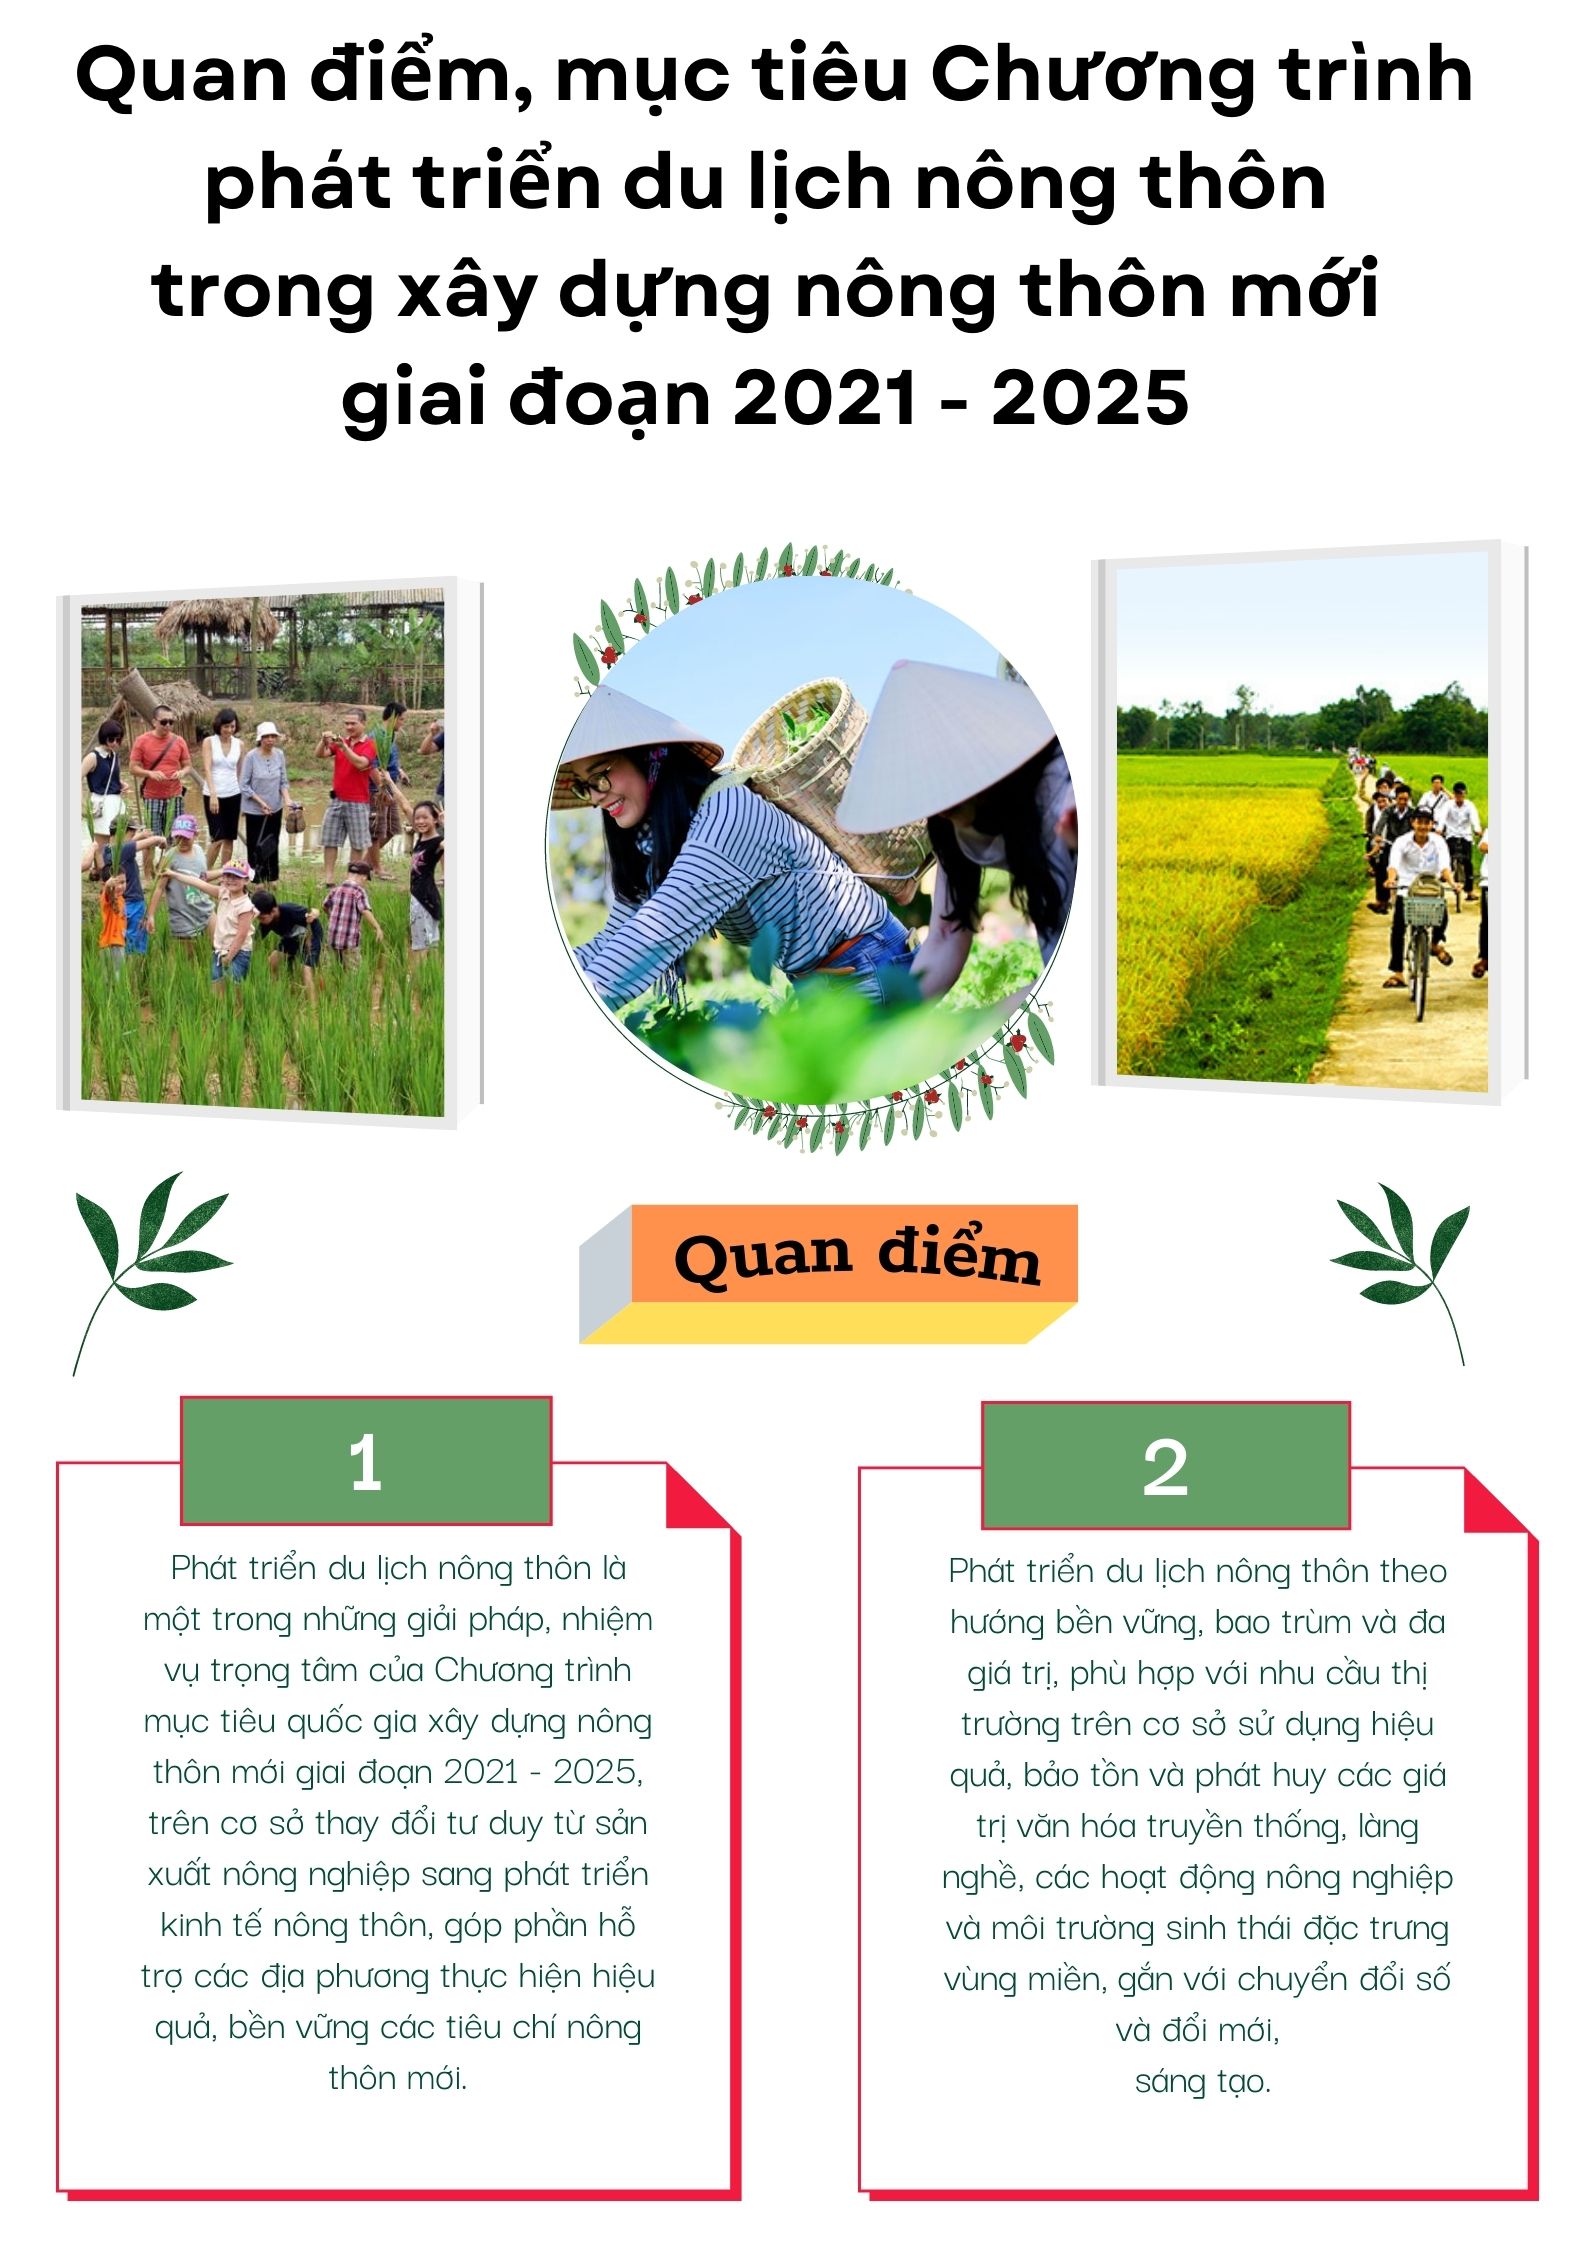 Quan điểm, mục tiêu Chương trình phát triển du lịch nông thôn trong xây dựng nông thôn mới giai đoạn 2021-2025